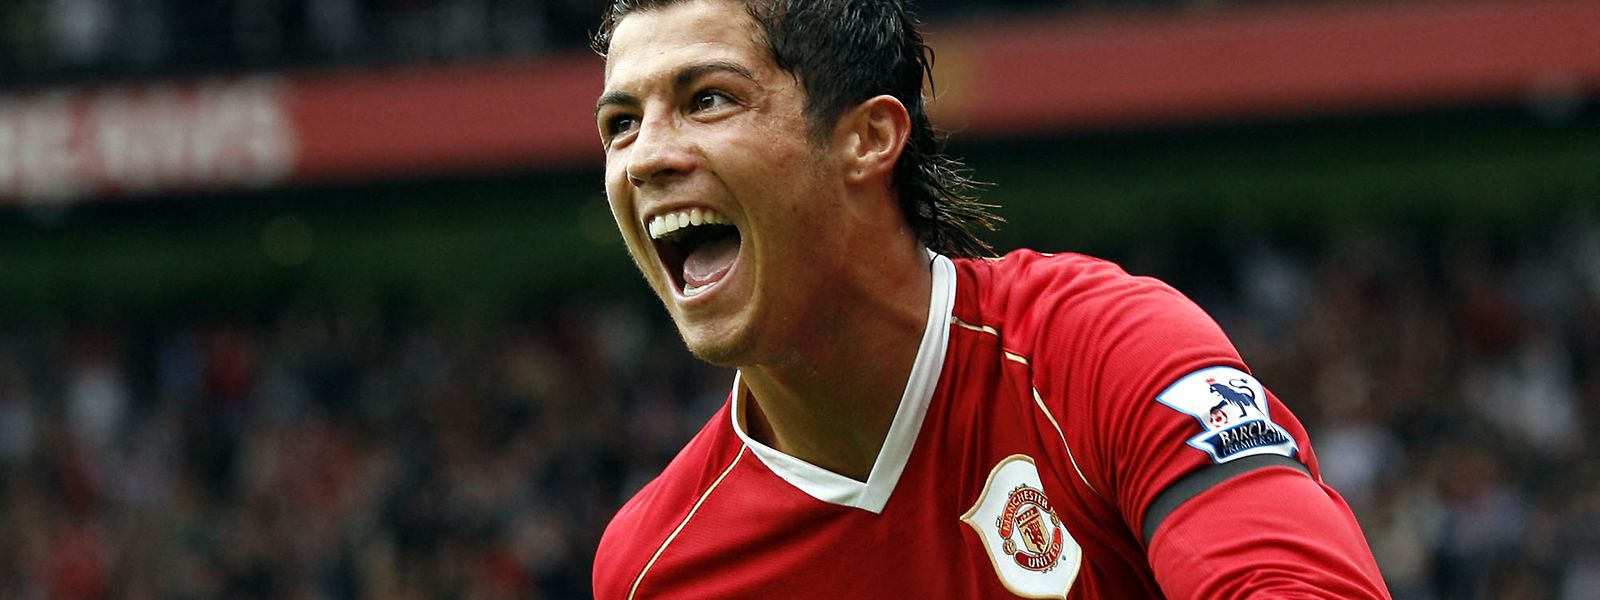 Ronaldo celebra um golo pelos 'red devils' em 2006. O jogador português regressa este ano ao clube que o elevou ao sucesso no futebol internacional.